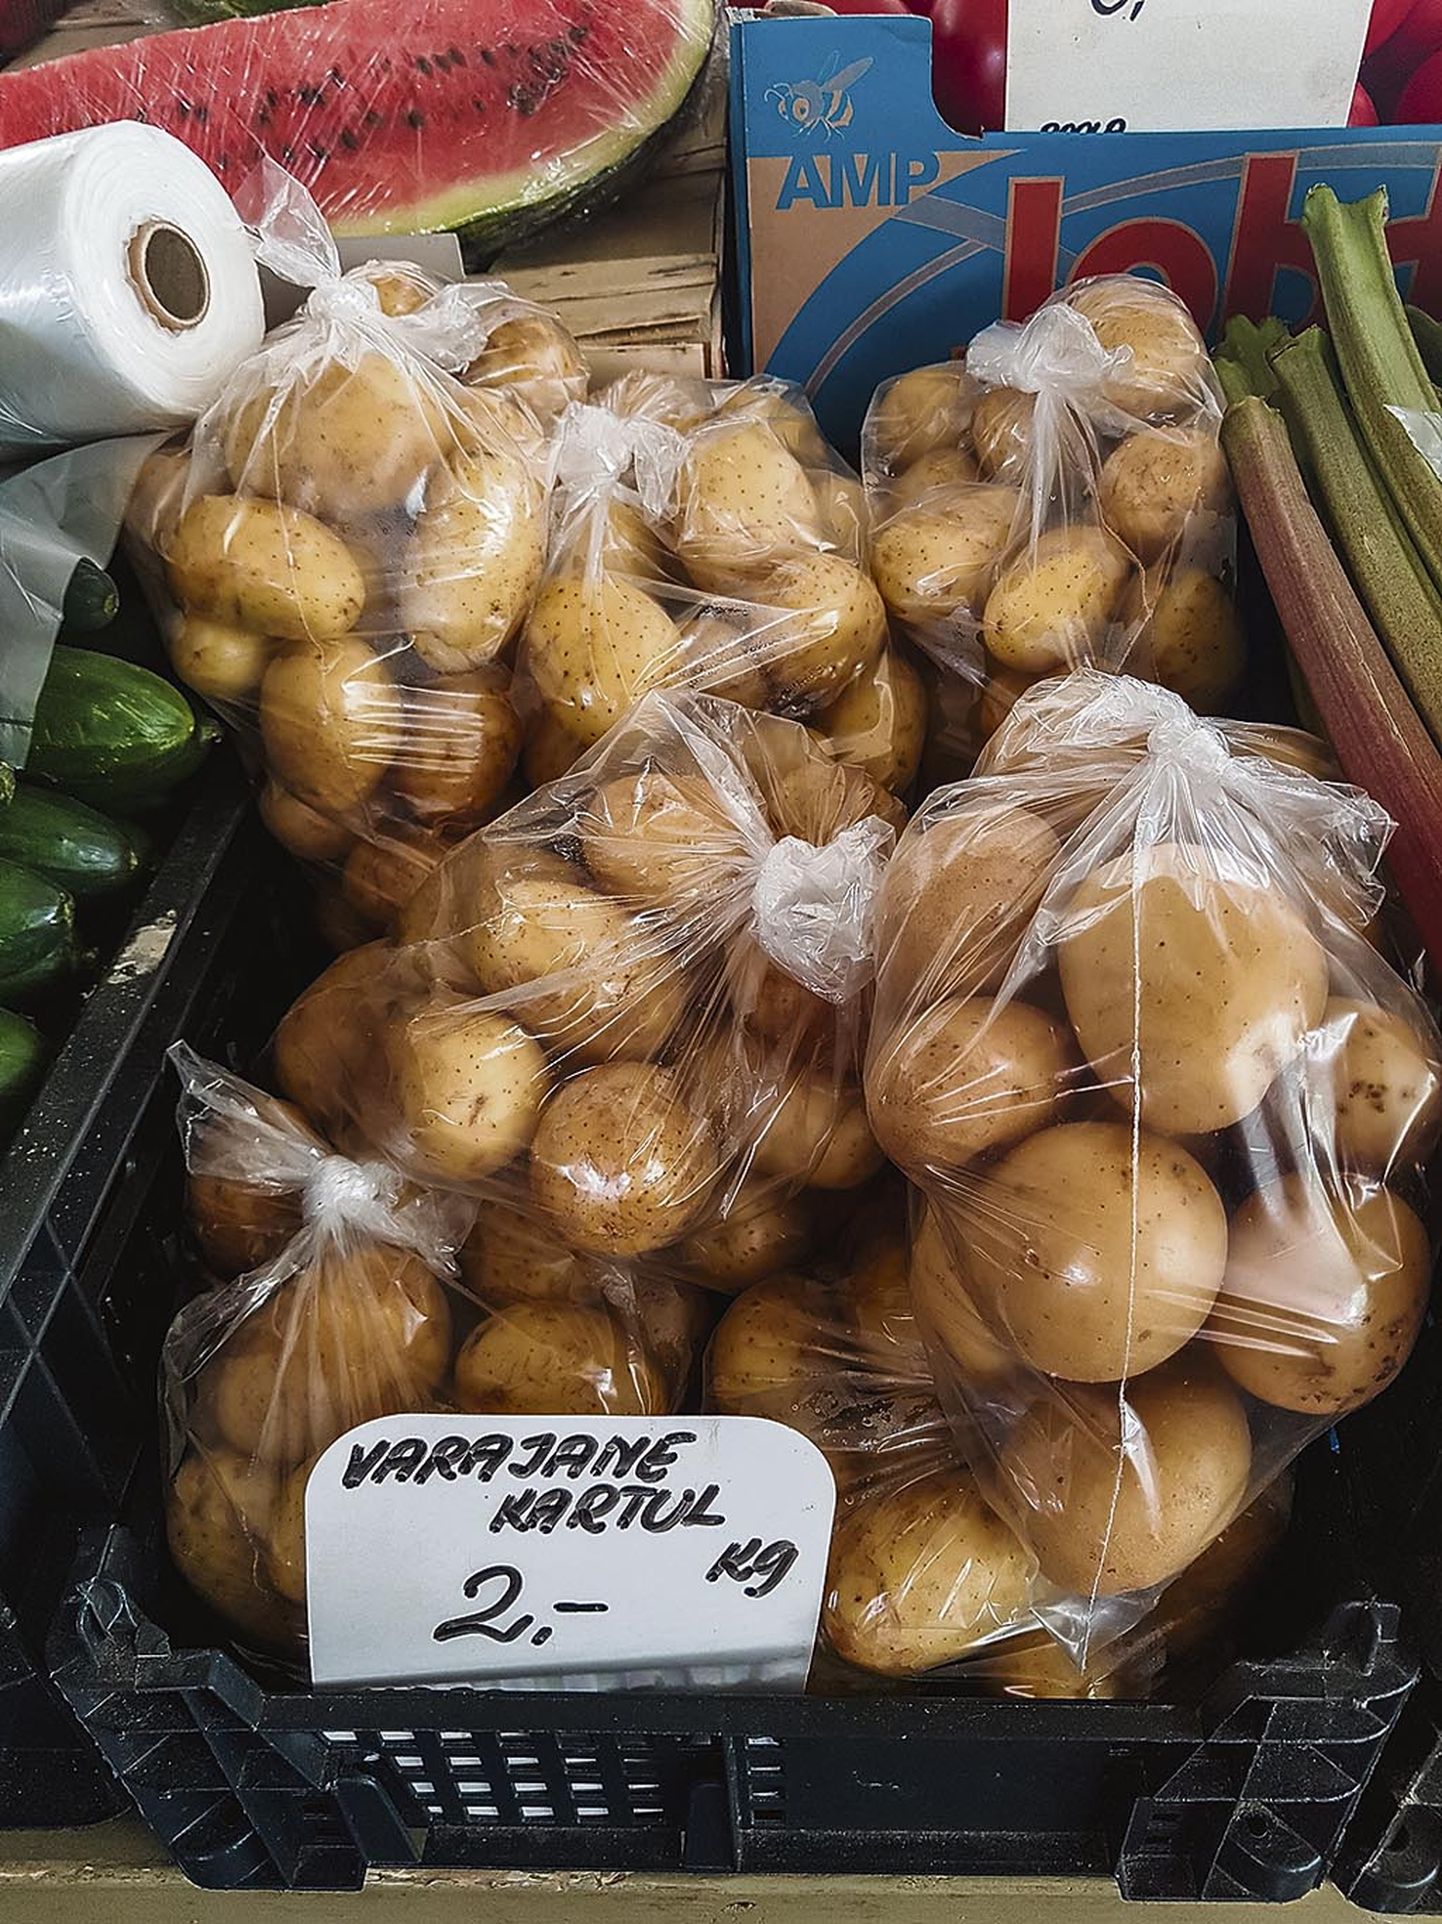 Pärnu Vanal turul vähemalt kirjade järgi Egiptuse kartulit ei müüda, varem müüdi. Praegu on saadaval Hispaania ja Prantsusmaa varajane kartul.